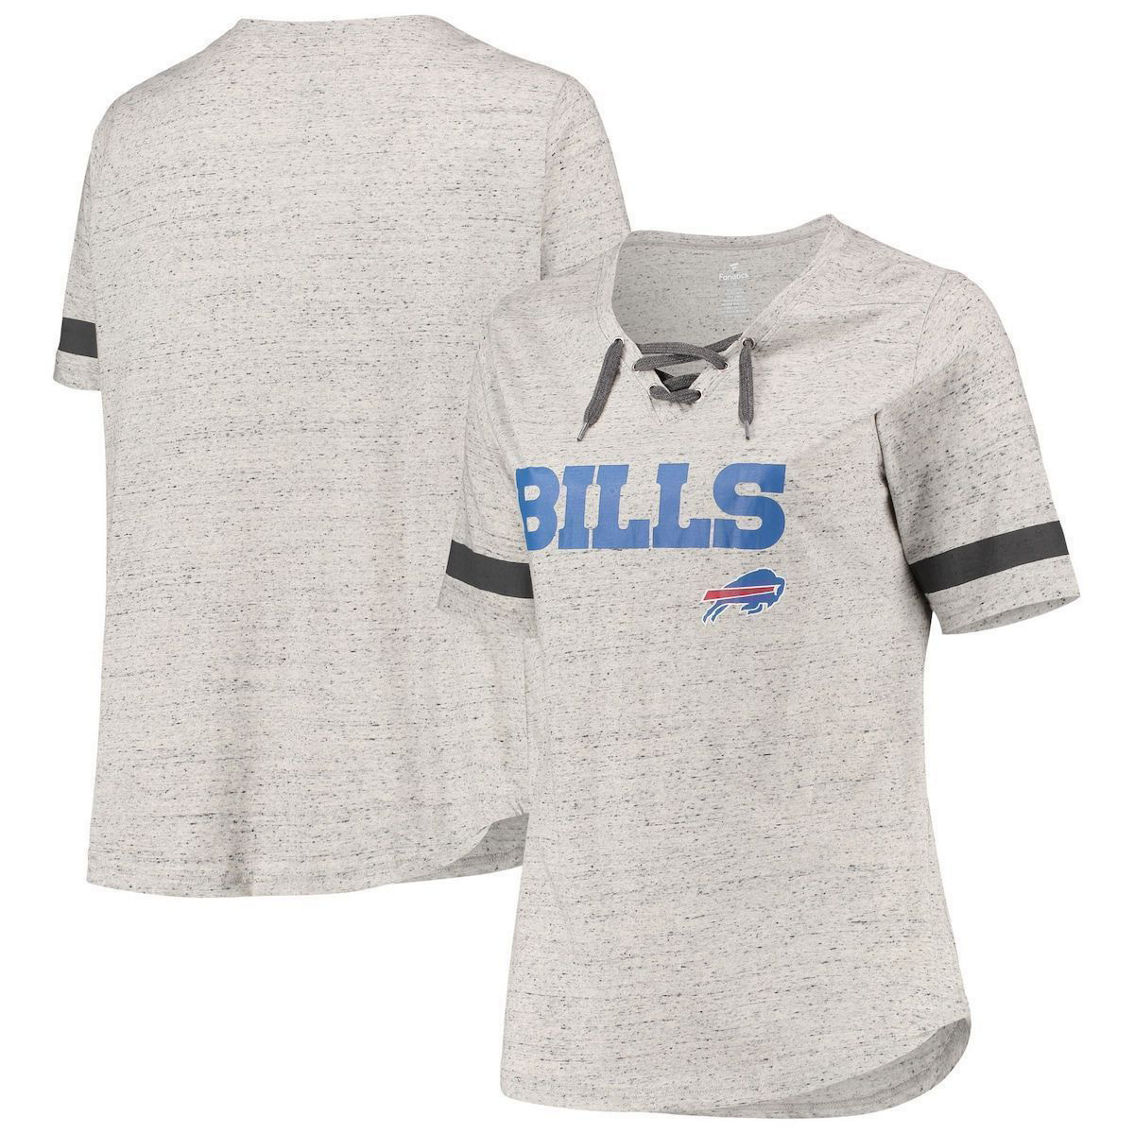 Fanatics Women's Heathered Gray Buffalo Bills Plus Size Lace-Up V-Neck T-Shirt - Image 2 of 4